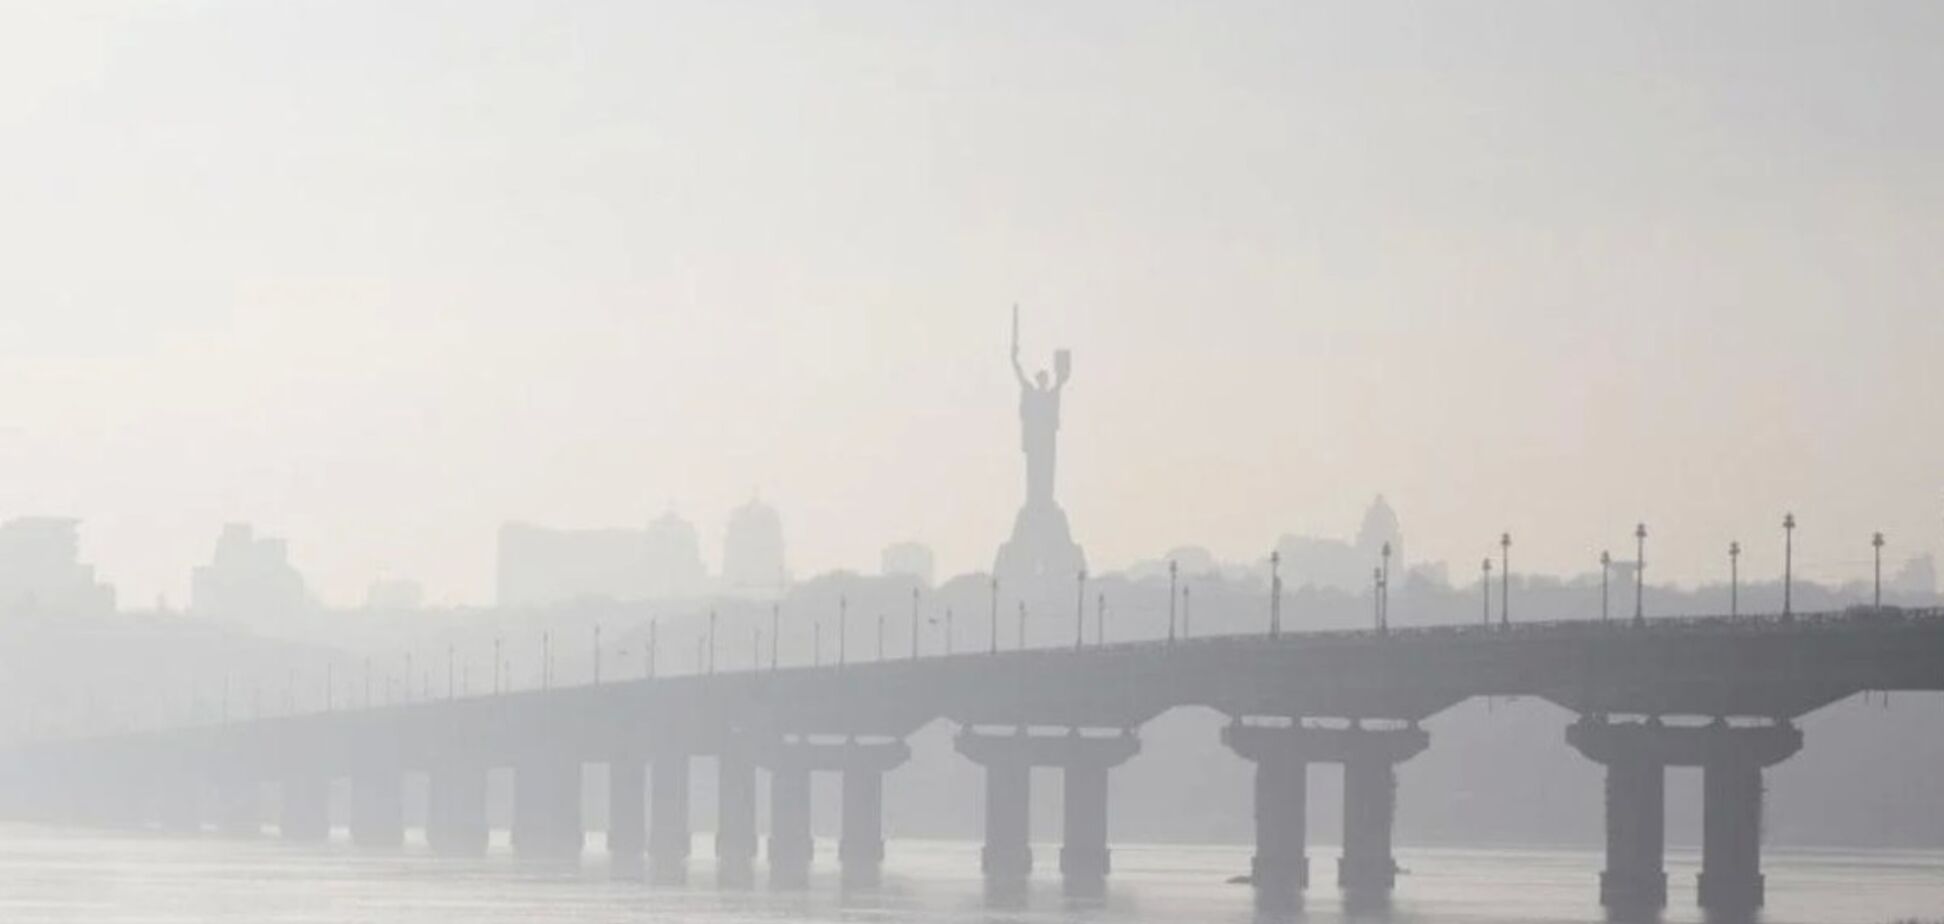 Рівень забруднення повітря у Києві за годину різко погіршився: здоров'я жителів у небезпеці